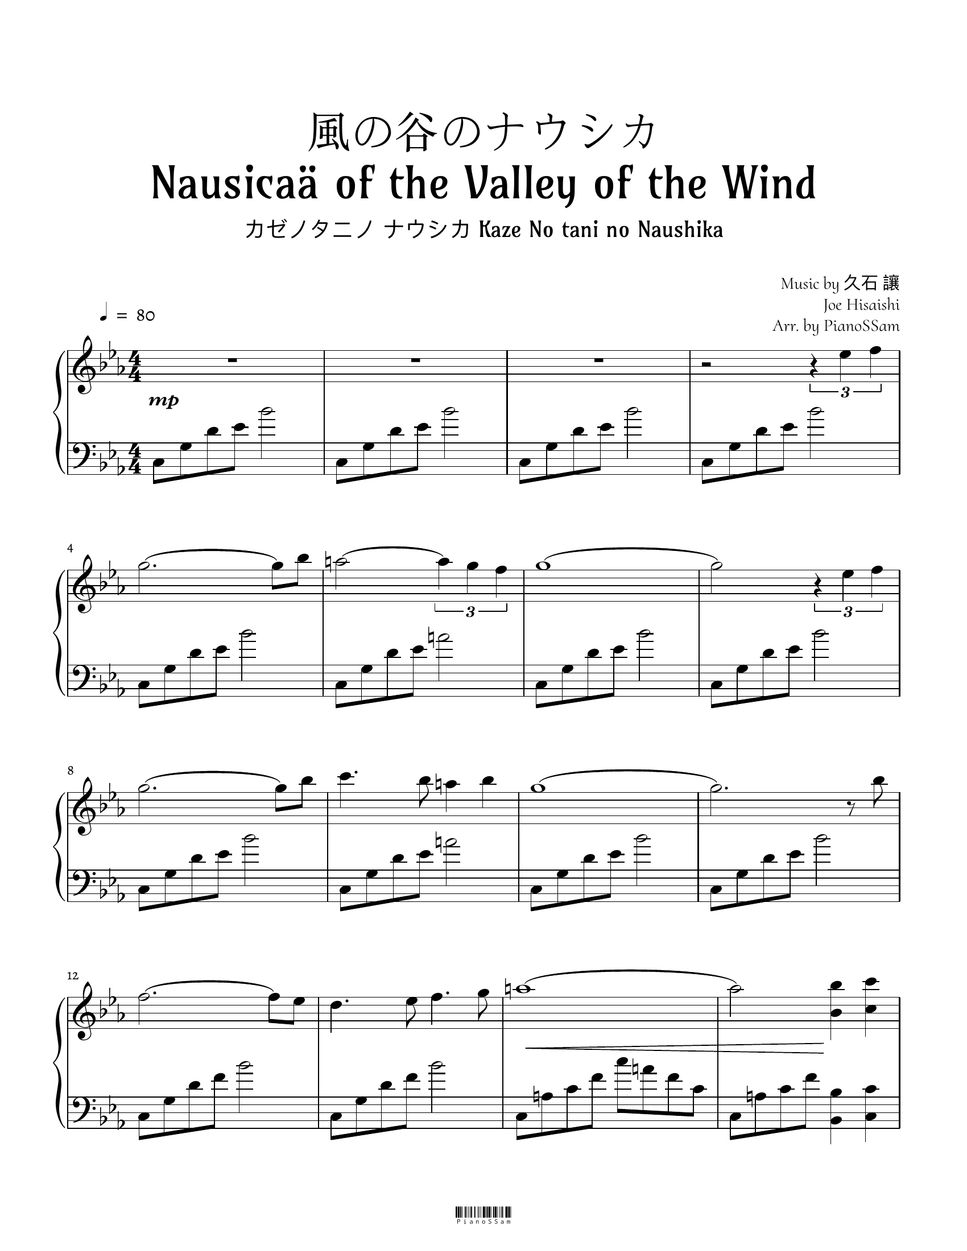 Hisaishi Joe - Nausicaa of the Valley of the Wind (Nausicaä of the Valley of the Wind) by PianoSSam